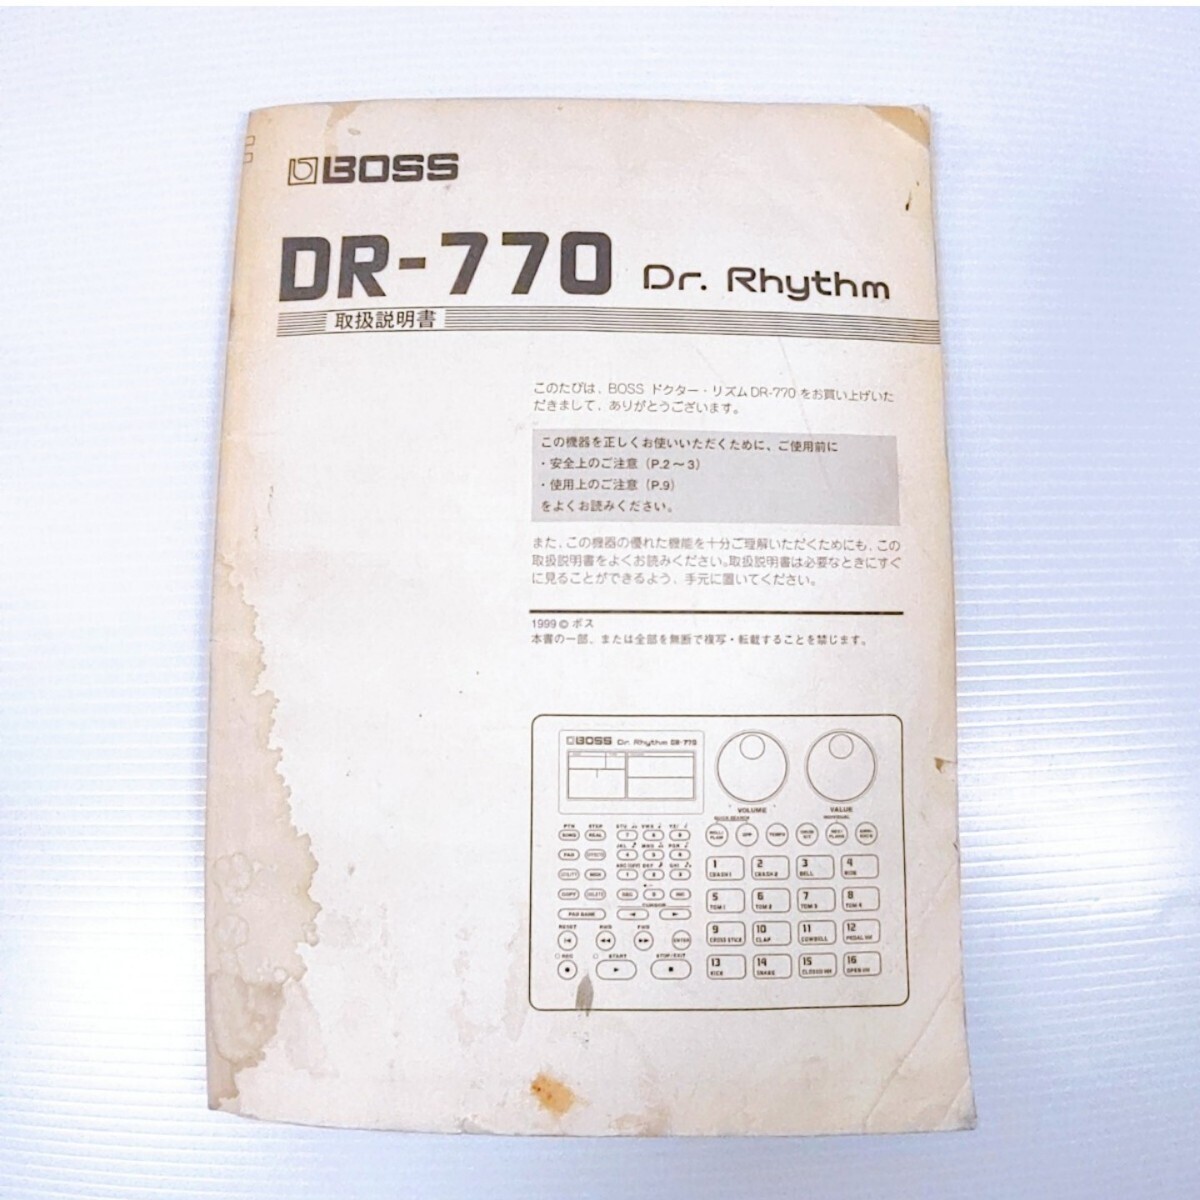 BOSS DR-770 ритм-бокс Dr Rhythm Boss адаптор имеется электризация подтверждено 